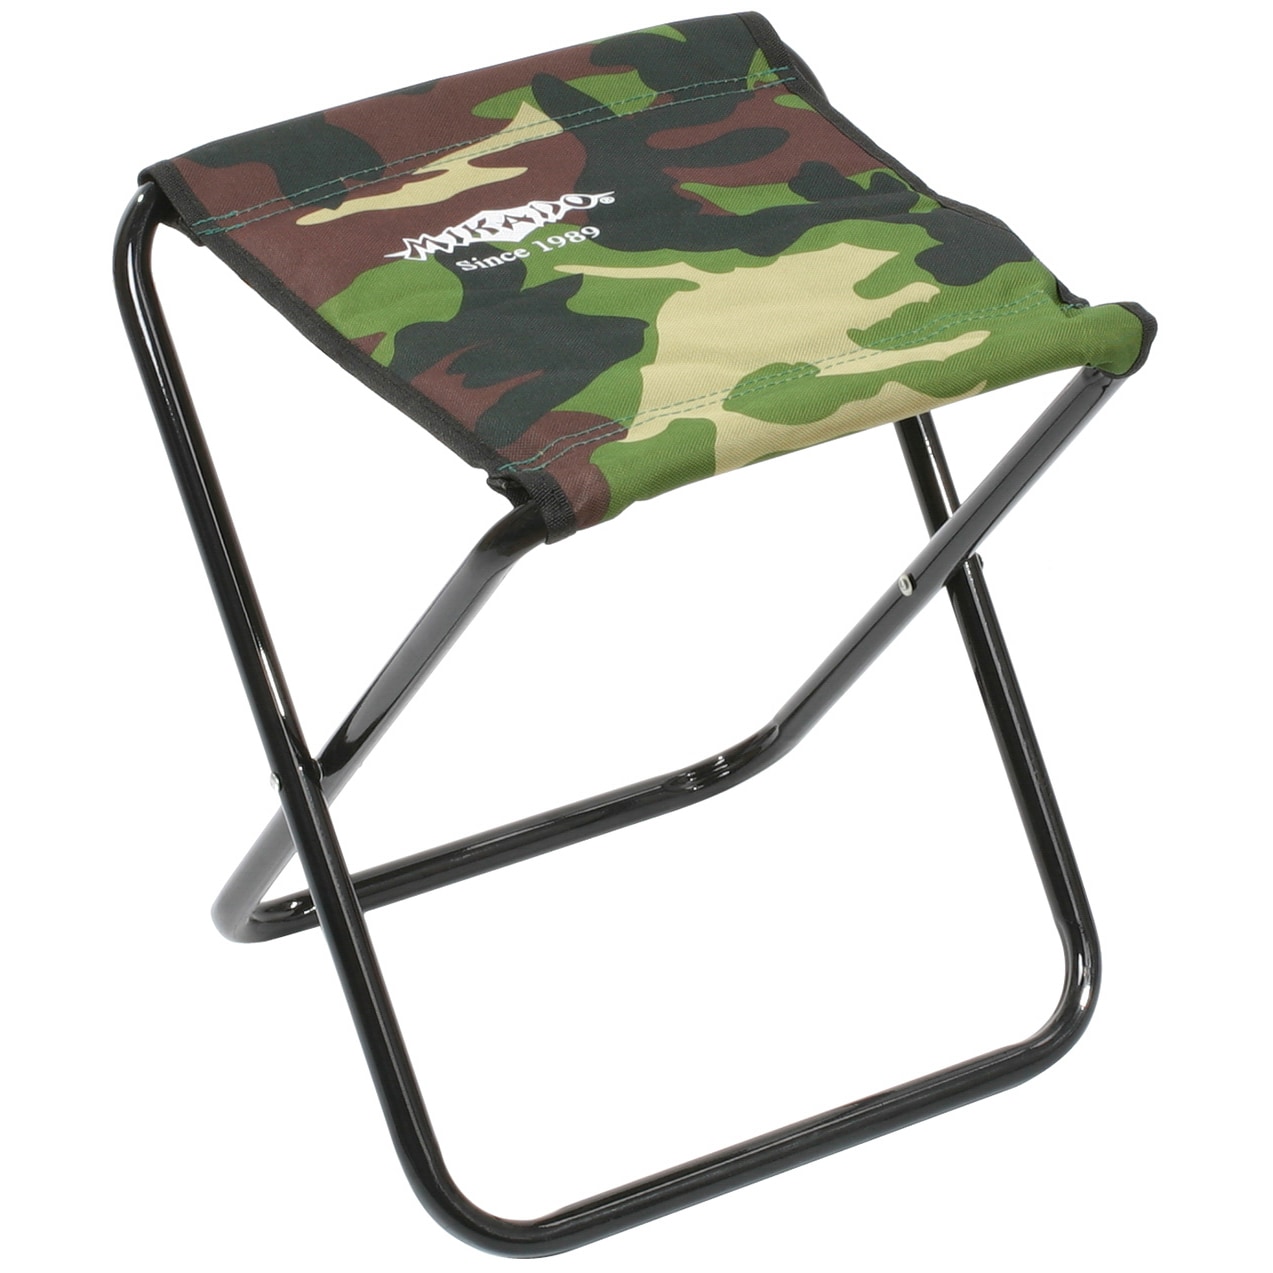 Krzesło turystyczne składane Mikado - Camouflage